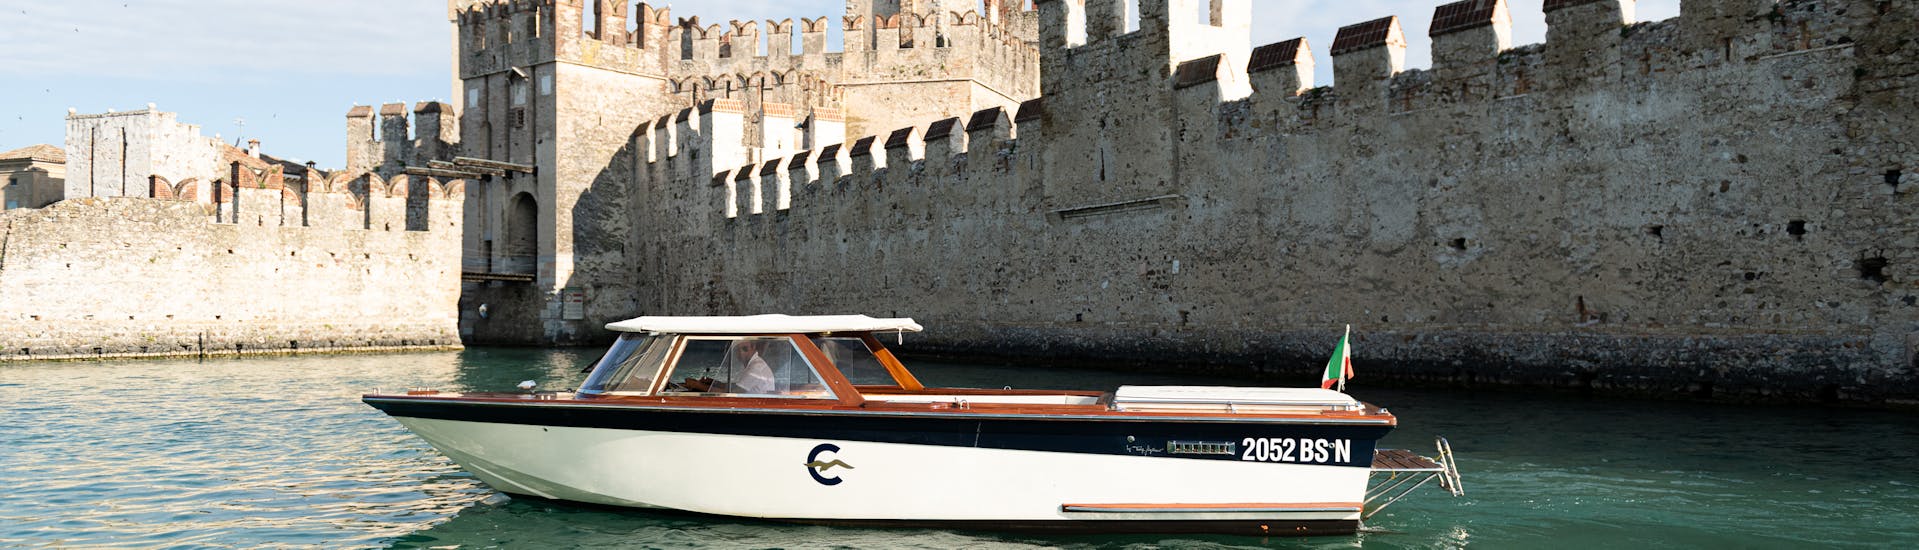 Un bateau en bois de style vénitien devant les murs du château Scaliger à Sirmione, utilisé lors de la Balade privée en bateau à l'Isola del Garda avec Consolini Boats.